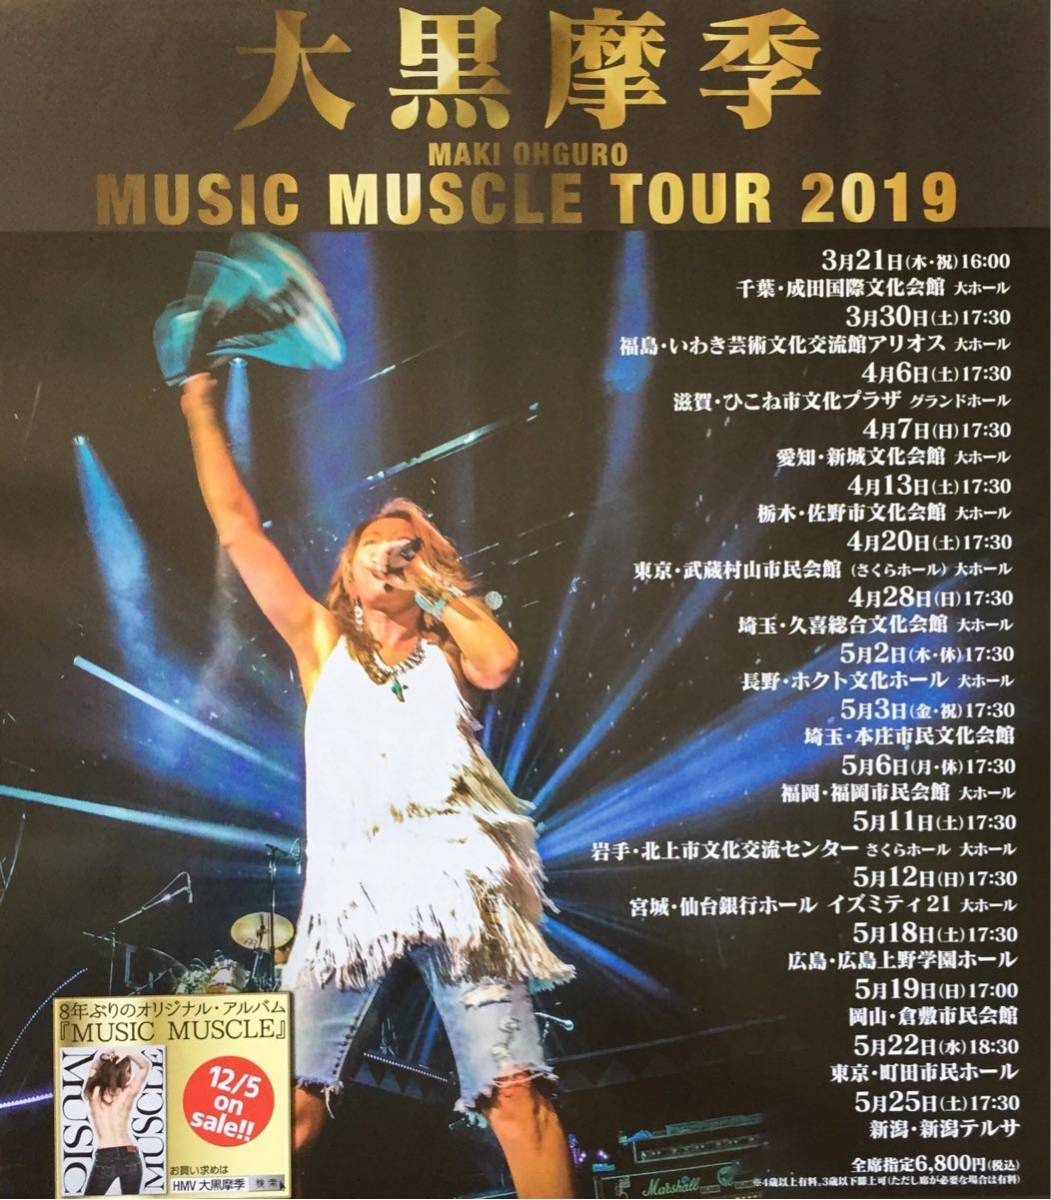 代購代標第一品牌－樂淘letao－大黒摩季MAKI OHGURO MUSIC MUSCLE TOUR 2019 チラシ非売品5枚組